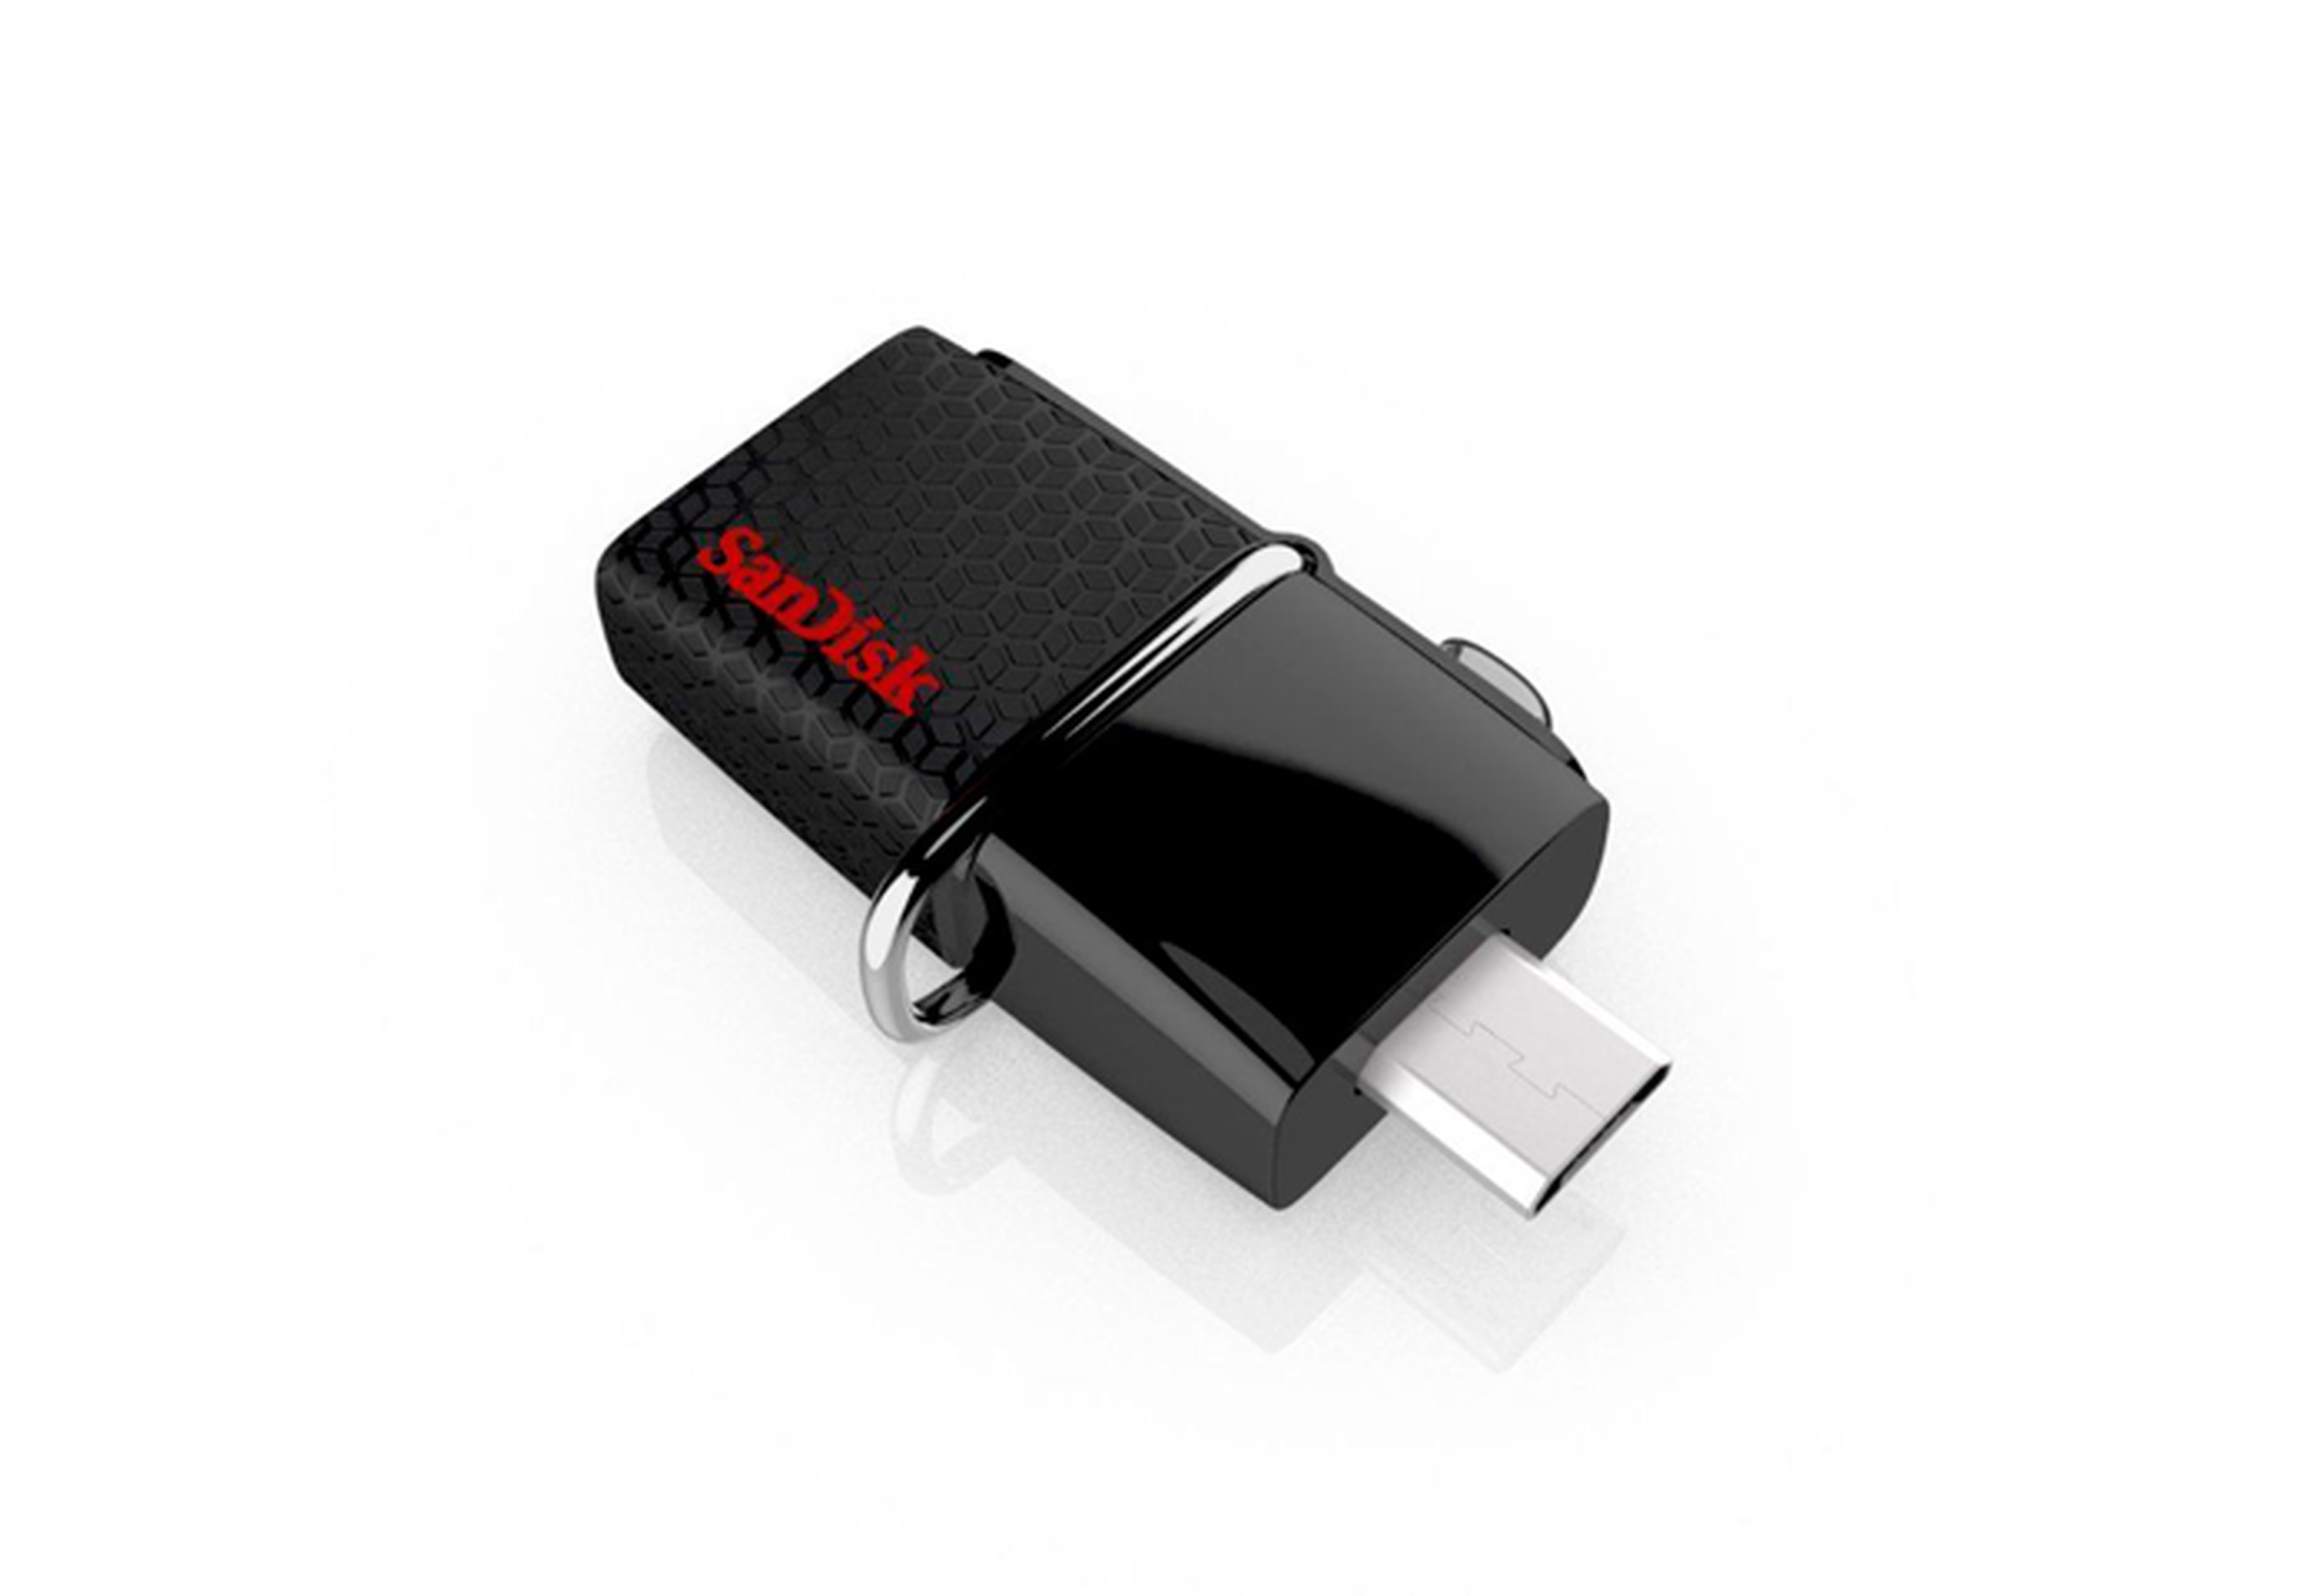 Pendrive OTG con conexión microUSB/USB 3.0